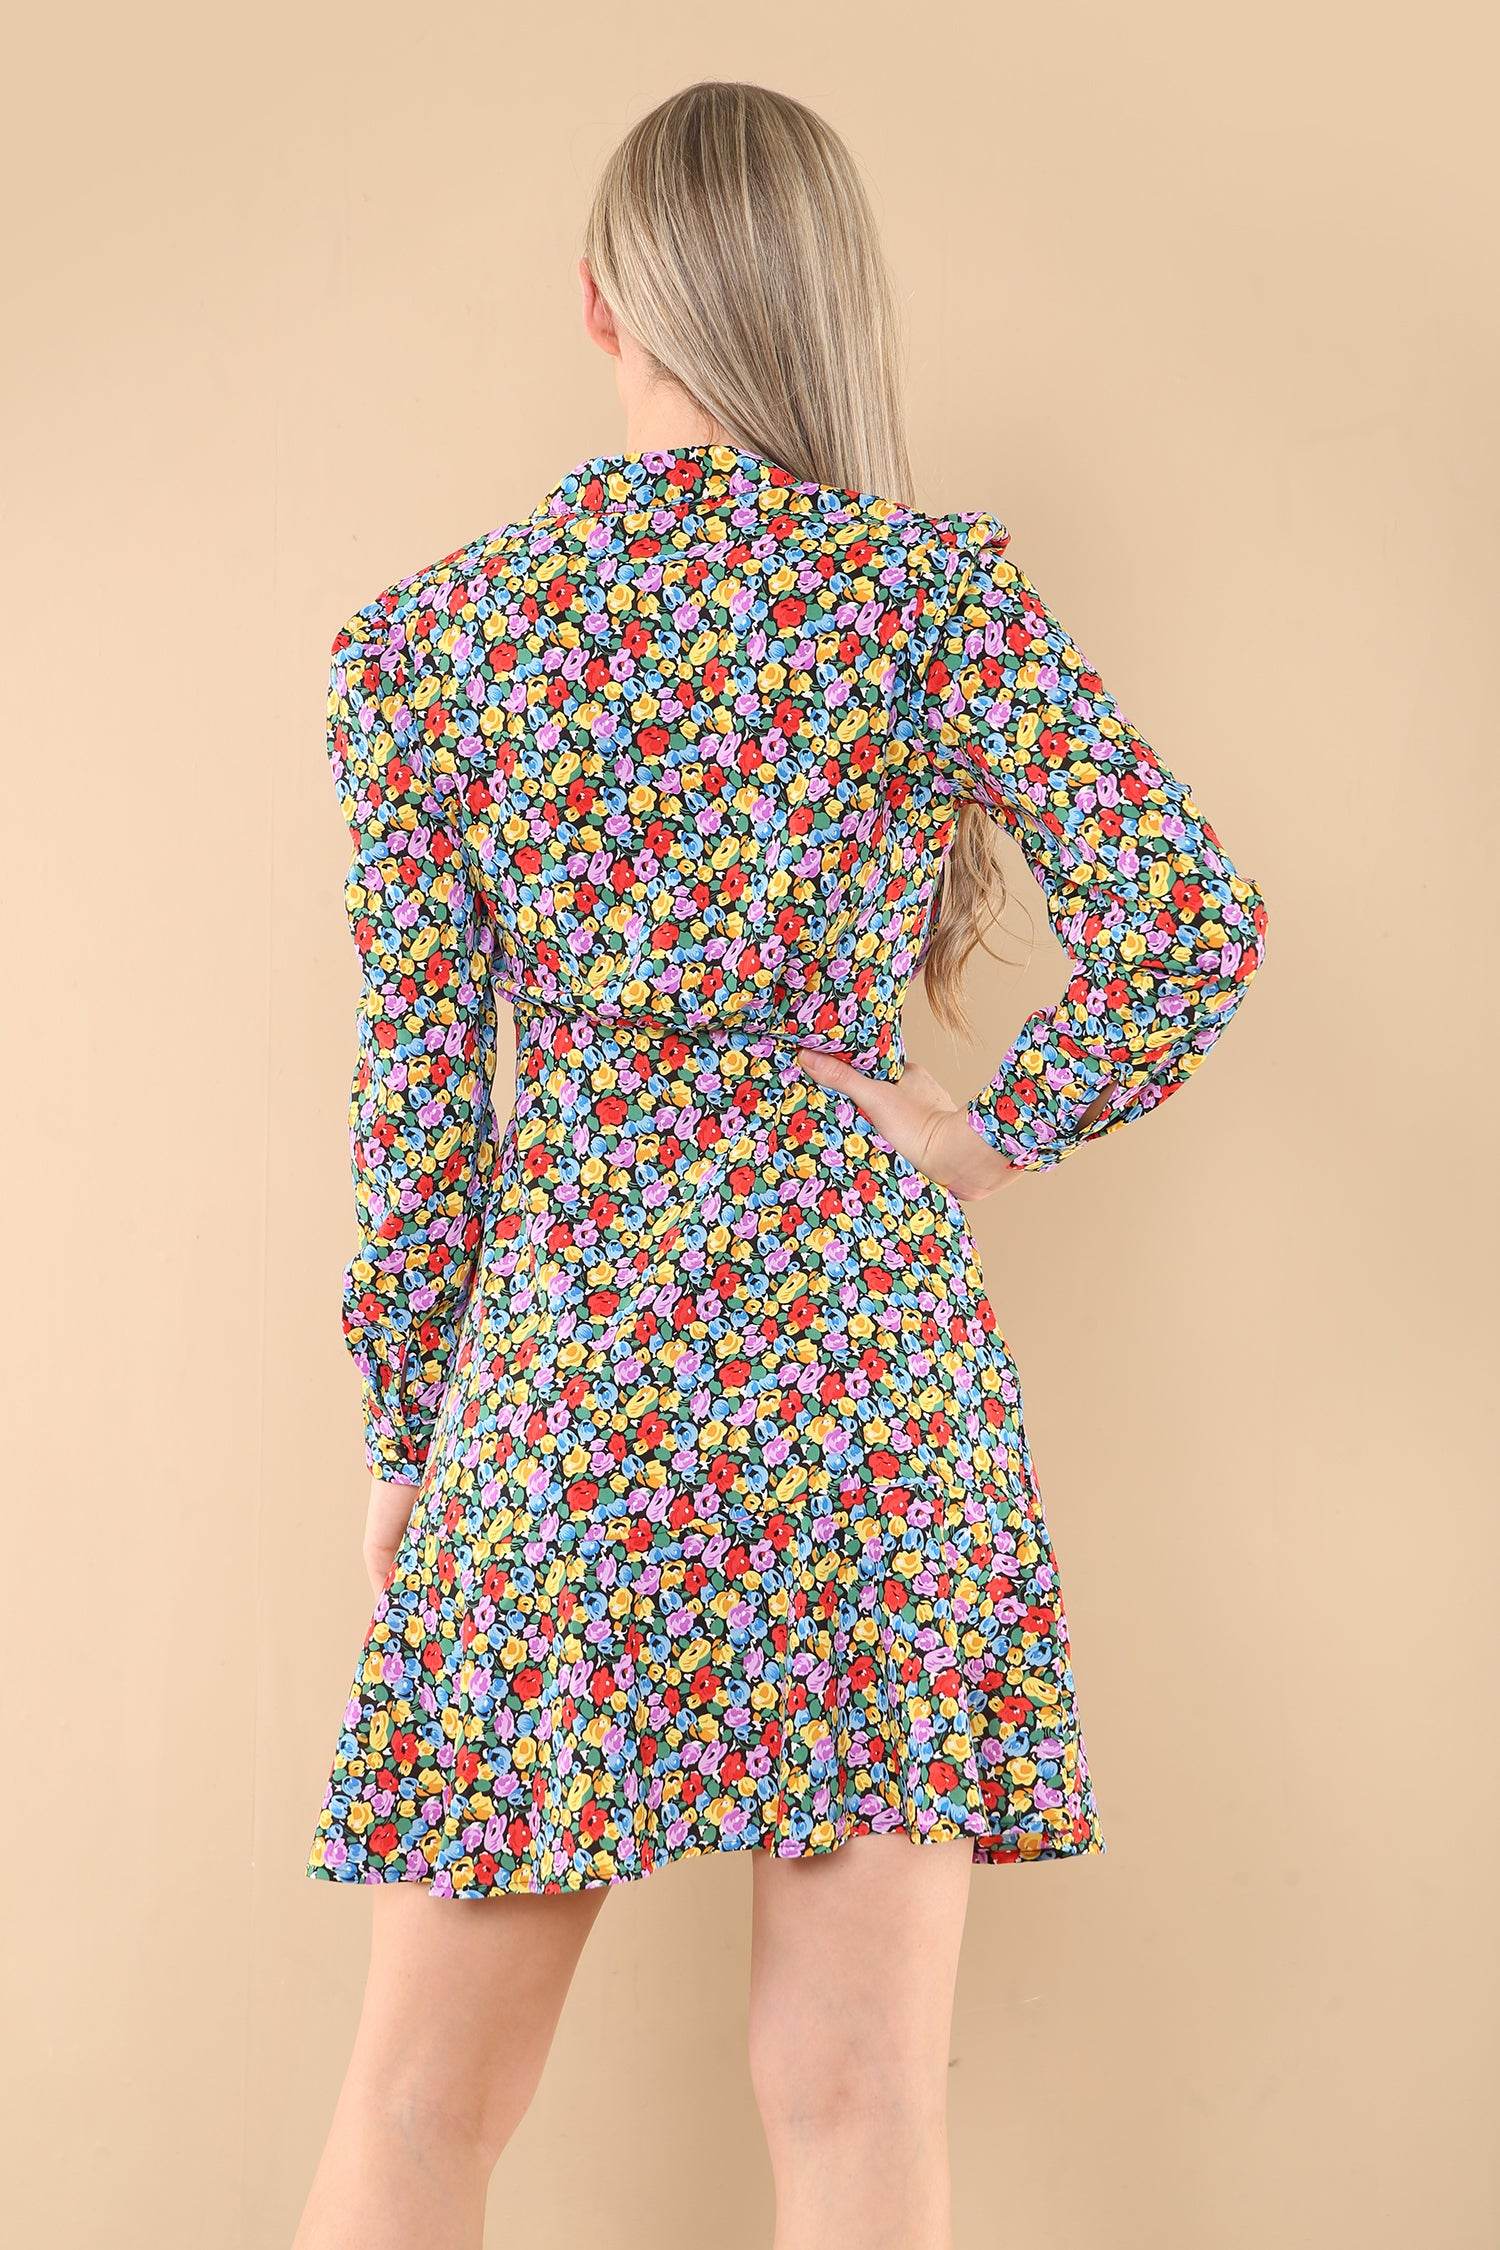 Love Sunshine Rainbow Floral Printt Frilled Hem Mini Dress Brunch Dress Casual Dress DB Everyday Dress Garden Party Dress Long Sleeve Dress LS-2141 Summer Dress